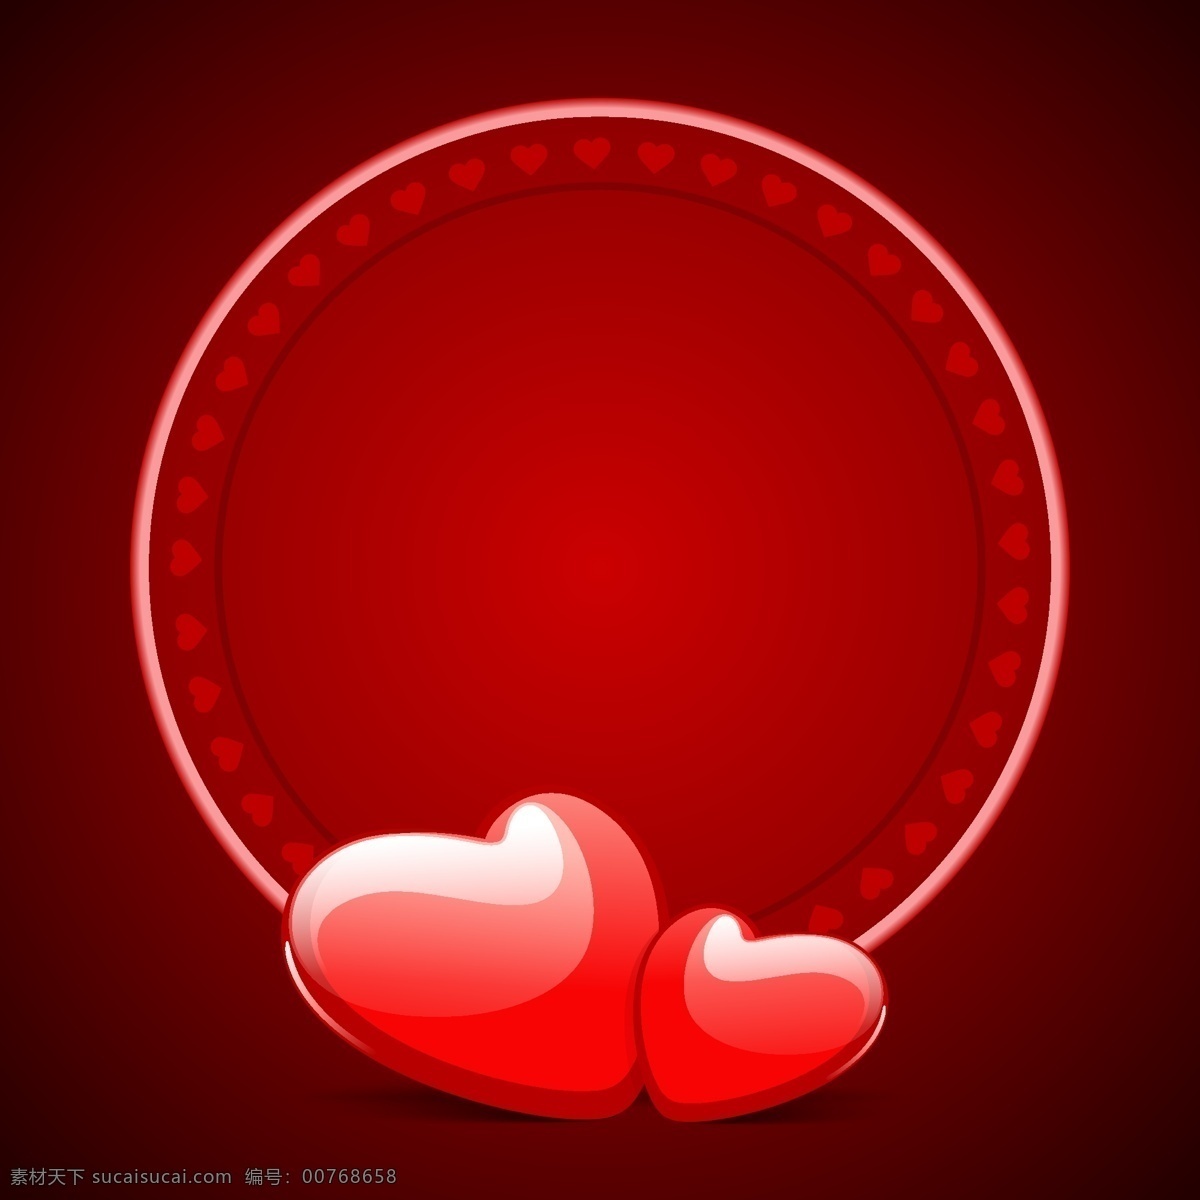 浪漫 红心 圆形 背景 矢量 海报 爱情